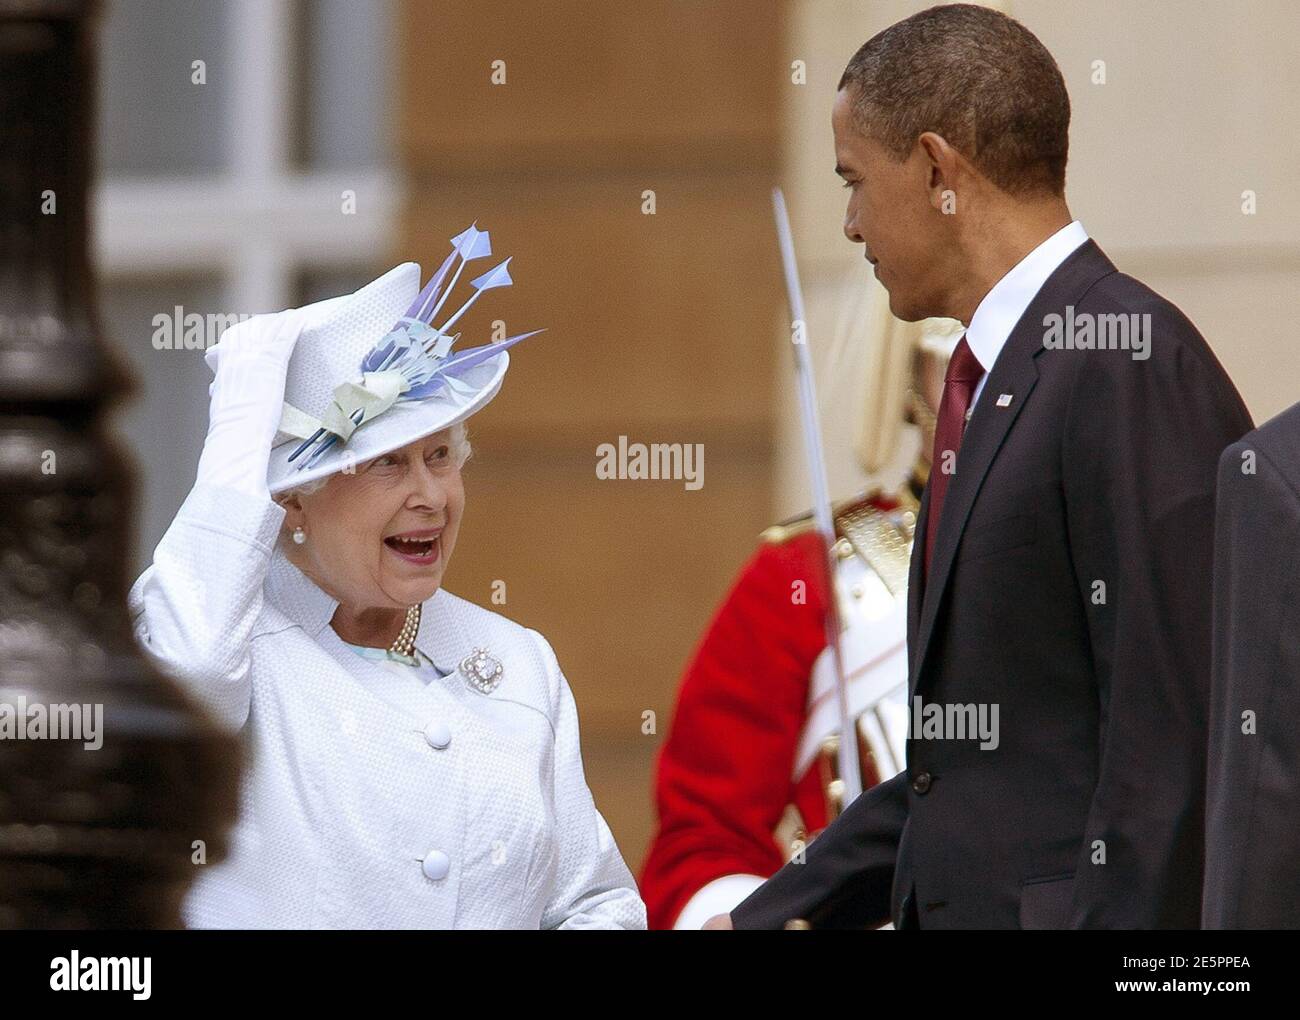 La reine Elizabeth (L) de Grande-Bretagne tient son chapeau dans le vent  alors qu'elle parle avec le président américain Barack Obama à Buckingham  Palace à Londres le 24 mai 2011. Obama a